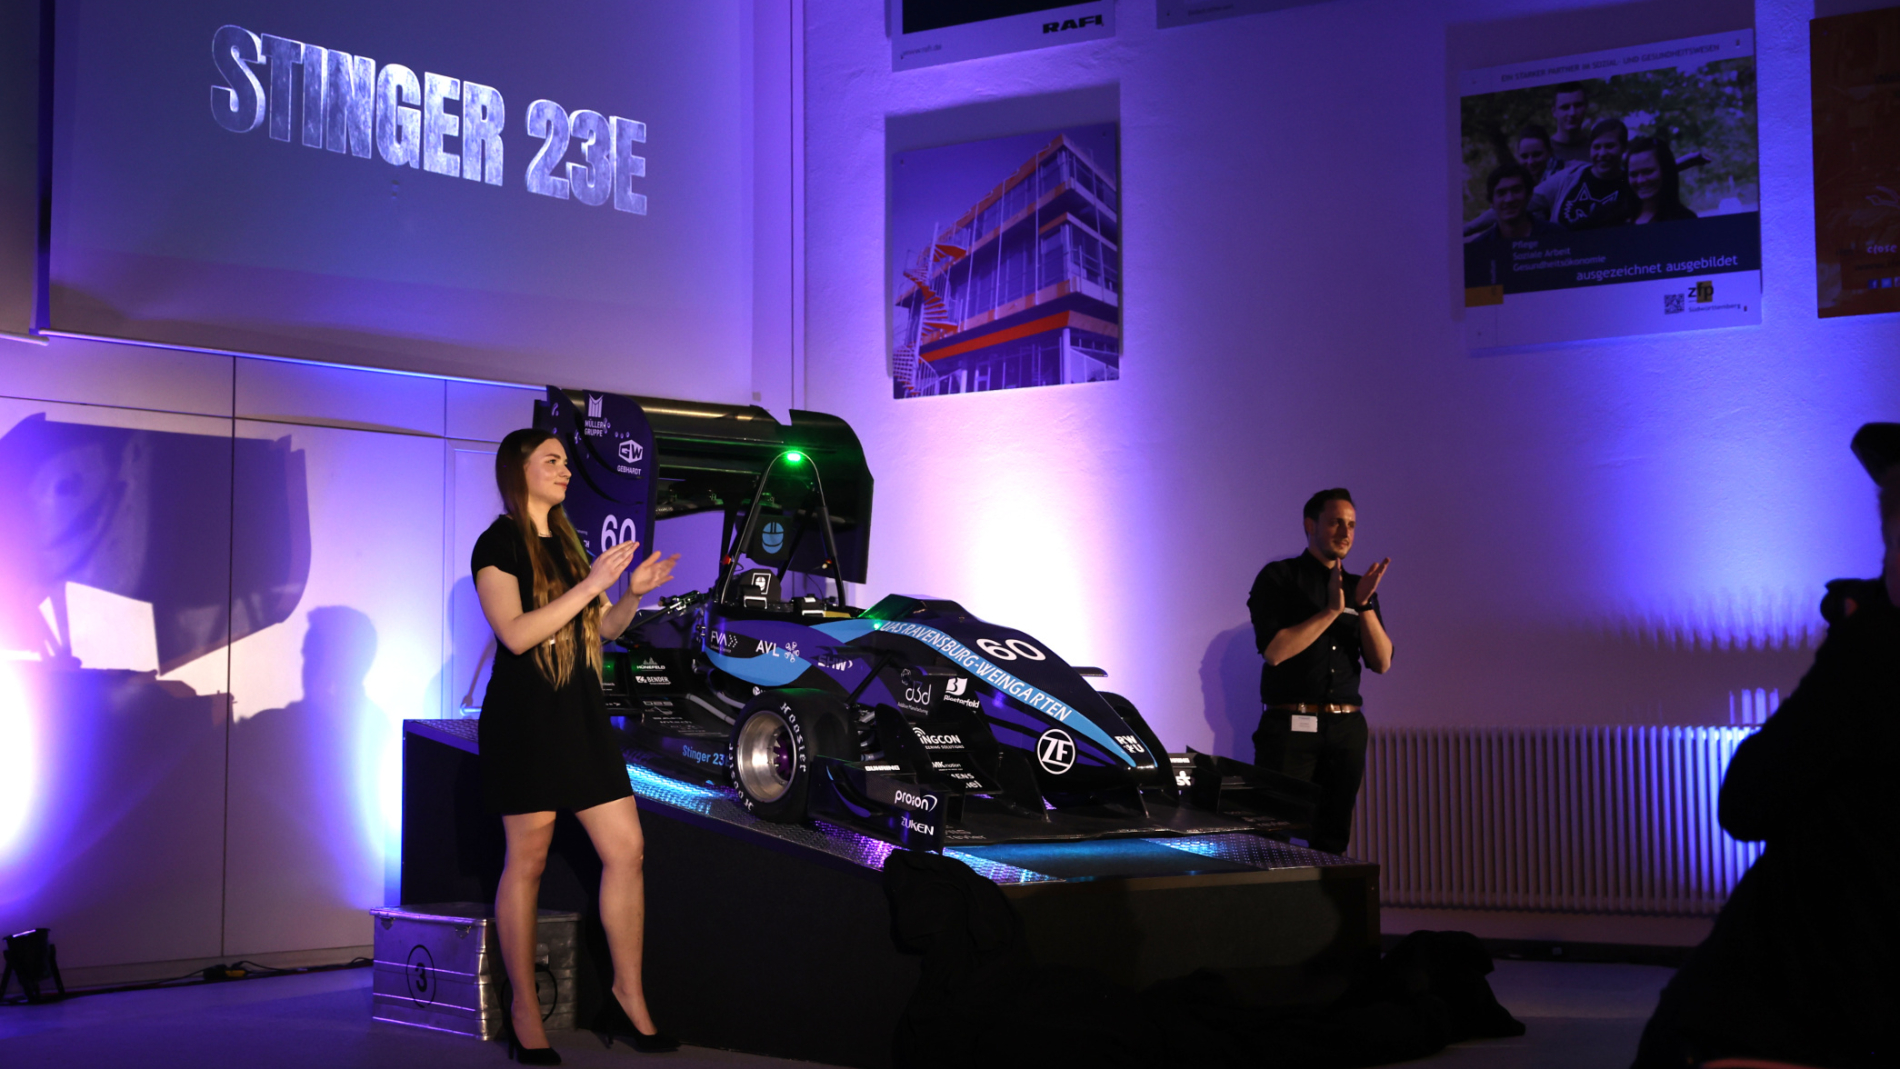 Beim Rollout des Formula Student Team Weingarten wurde der neue Stinger 23E, ein Rennwagen mit elektroischem Antrieb vorgestellt.